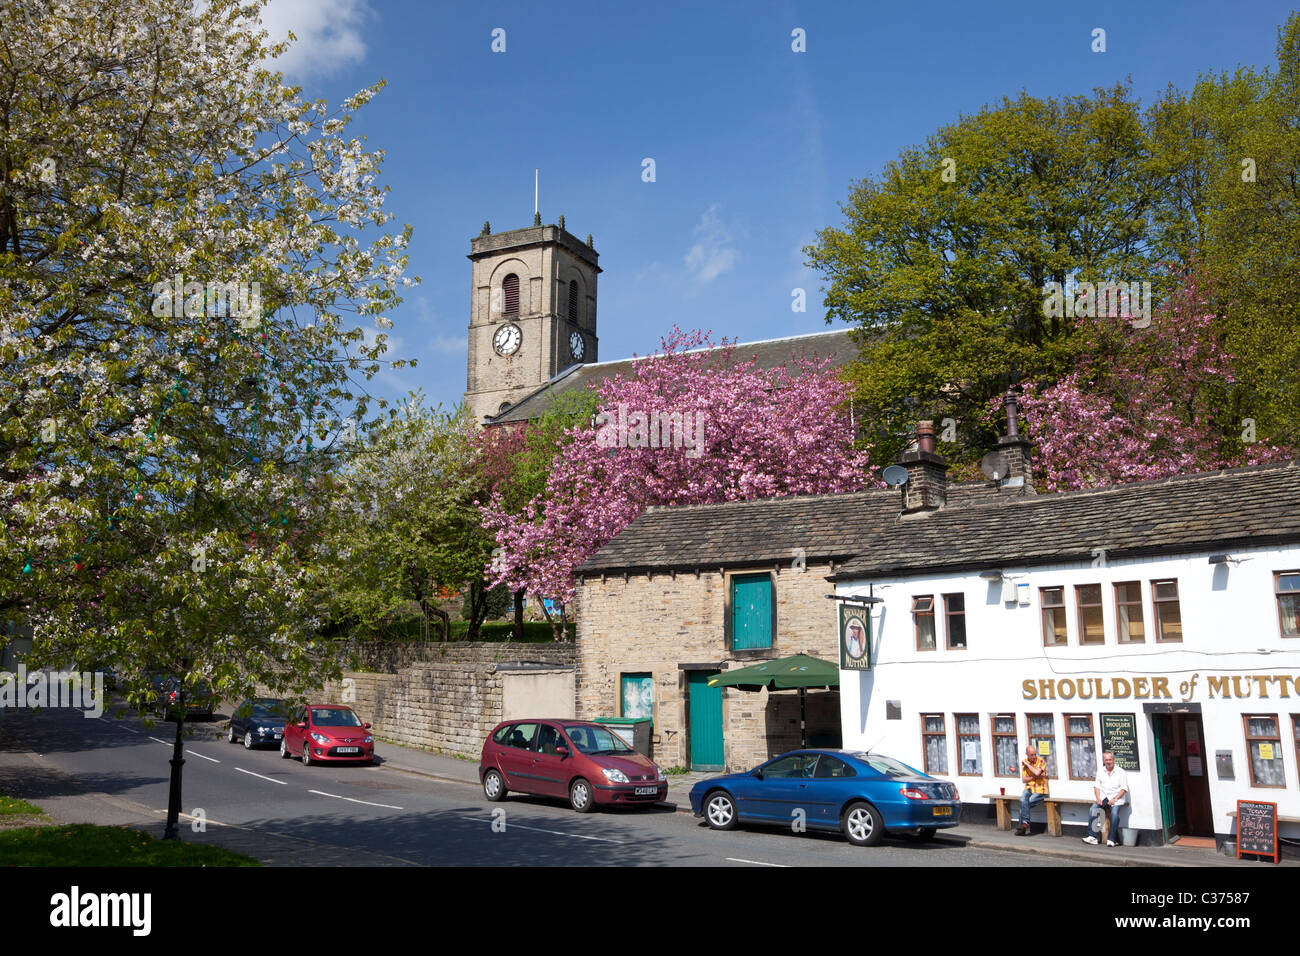 St James Church et l'épaule de mouton pub, à Slaithwaite dans le Yorkshire de l'Ouest Banque D'Images